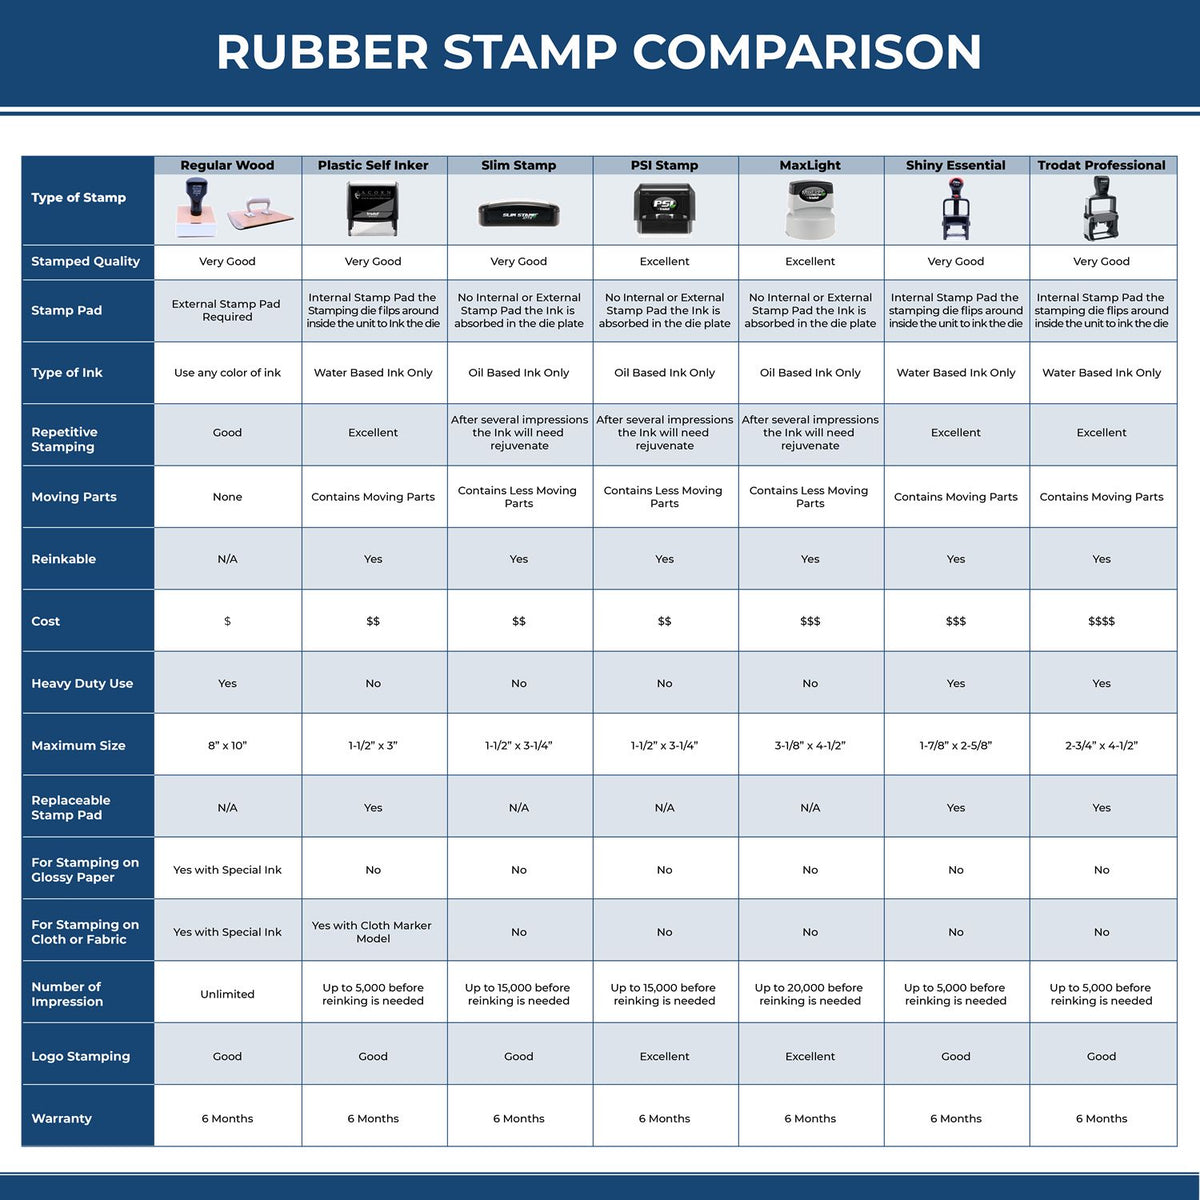 Sample Xstamper Stamp 5093 Rubber Stamp Comparison